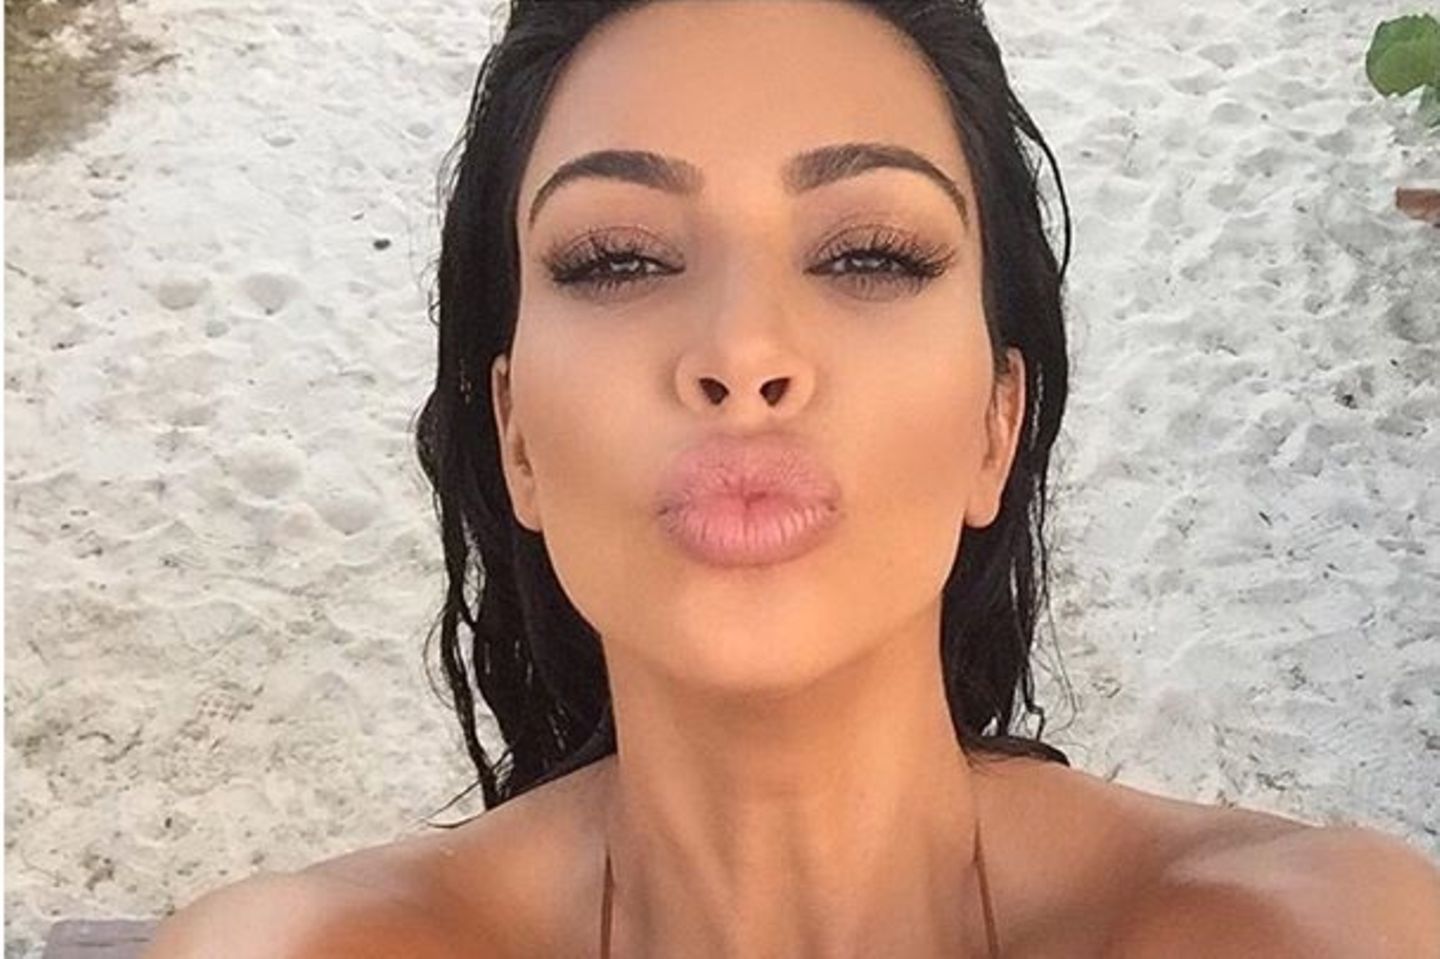 21 Hottest Pics Of Kim Kardashian In A Bikini